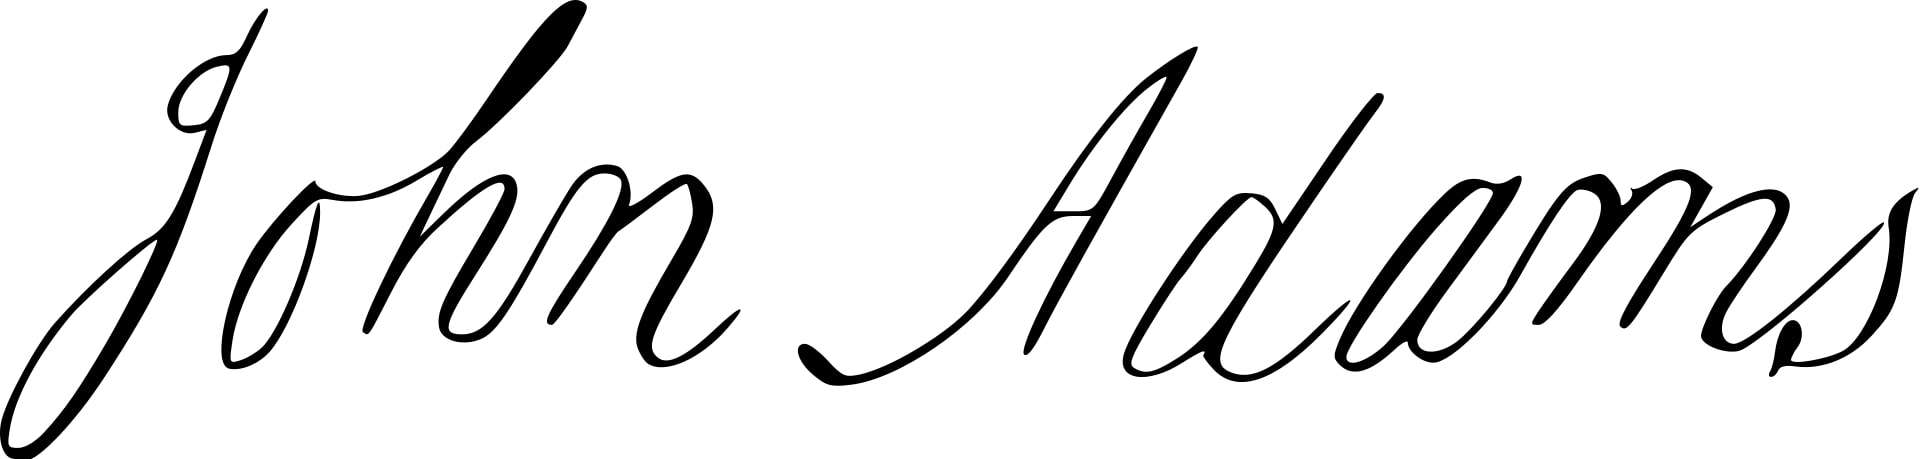 John Adams Signature